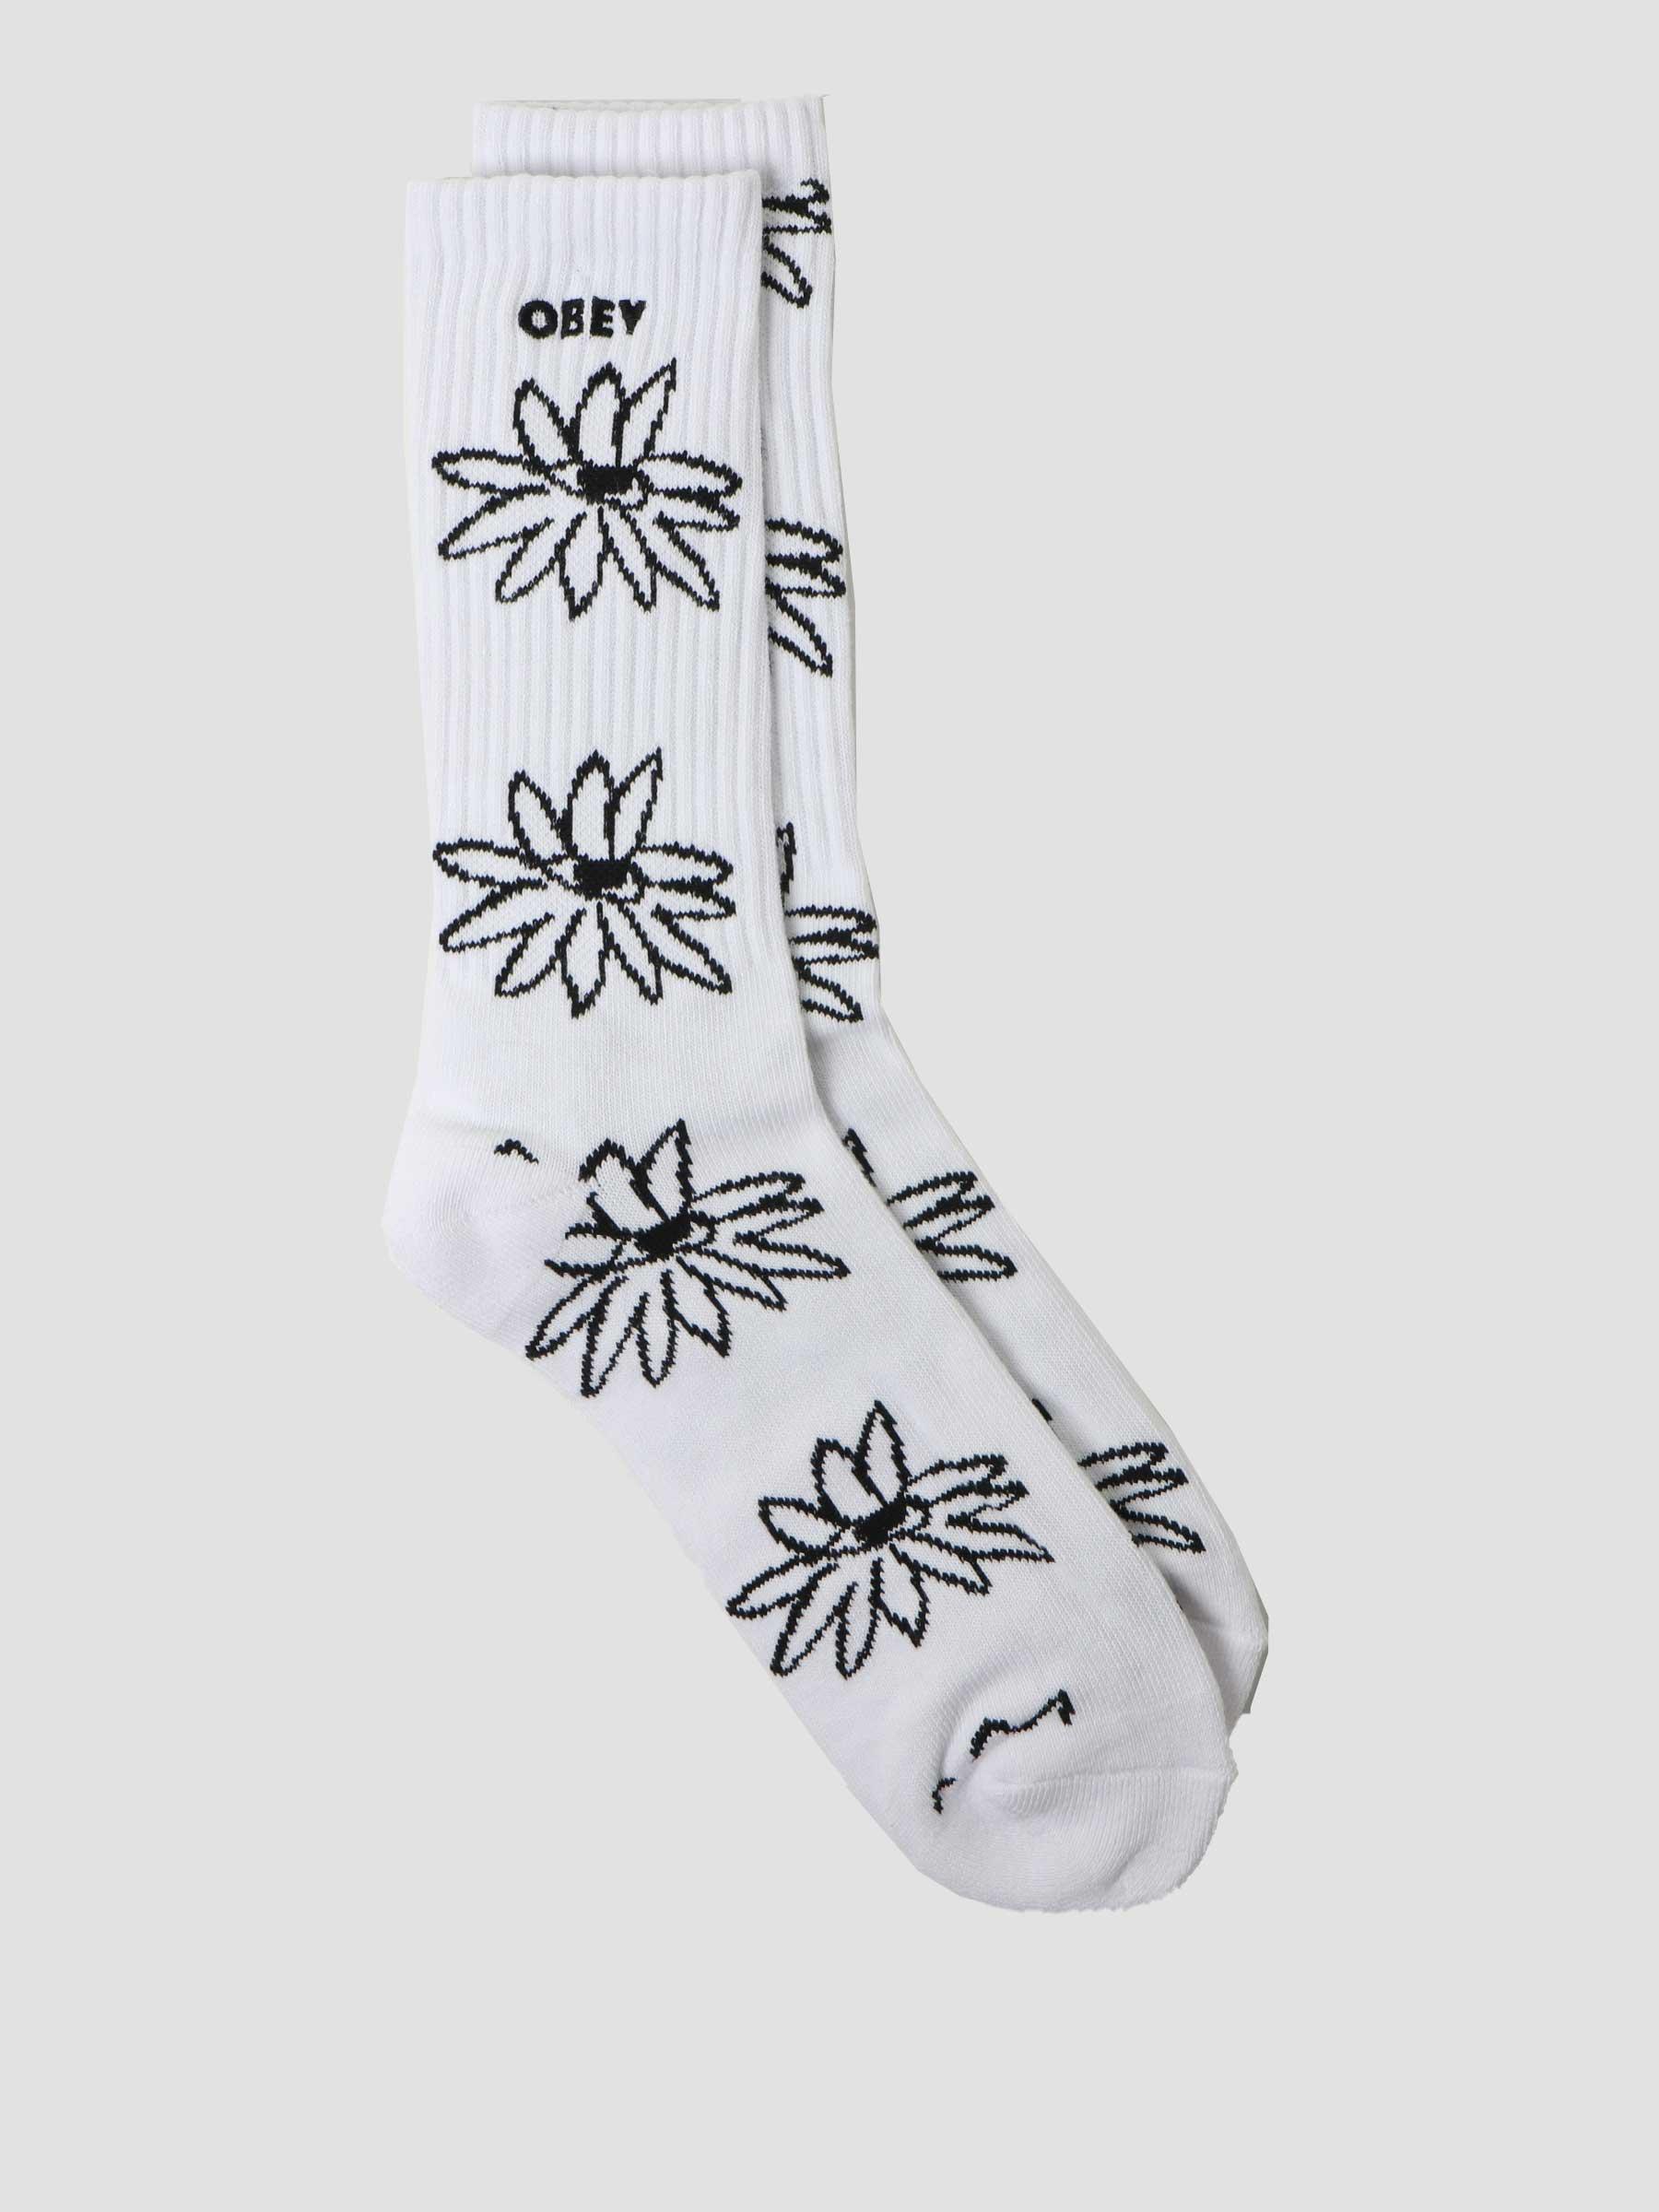 Obey Natty Socks Socks White Multi 100260157